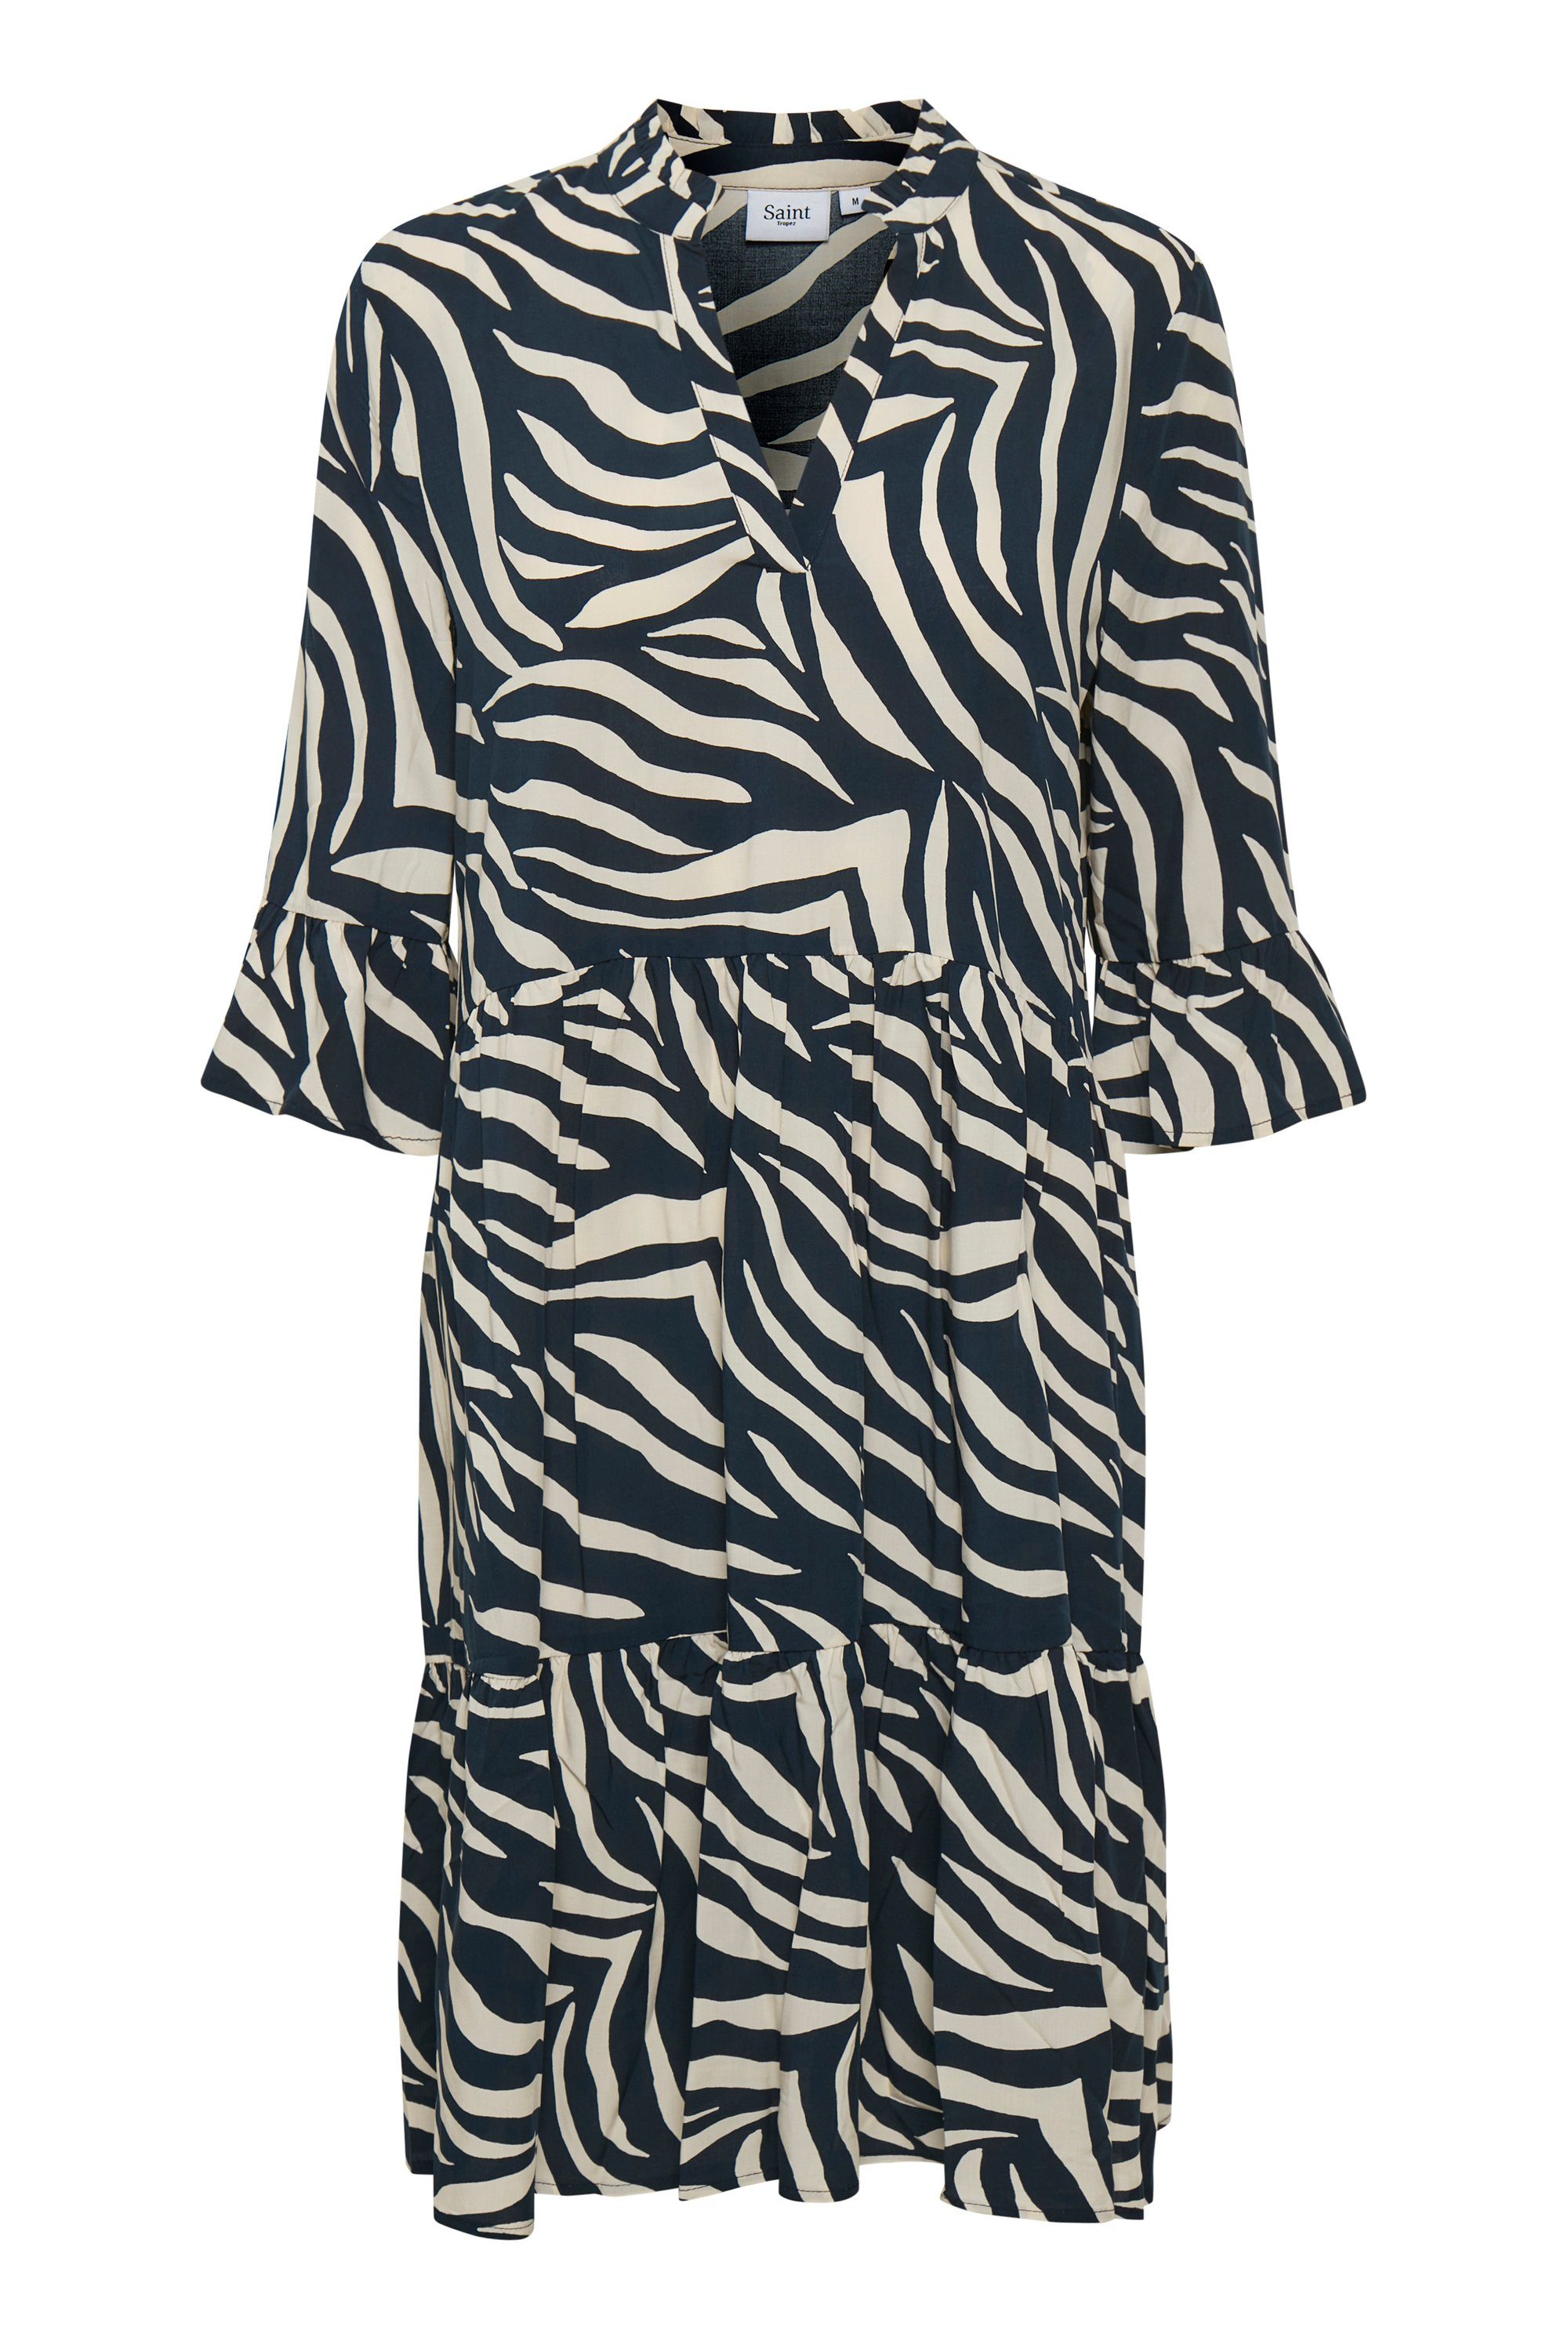 Saint Tropez Dress Skin EdaSZ Total Eclipse Jerseykleid Zebra